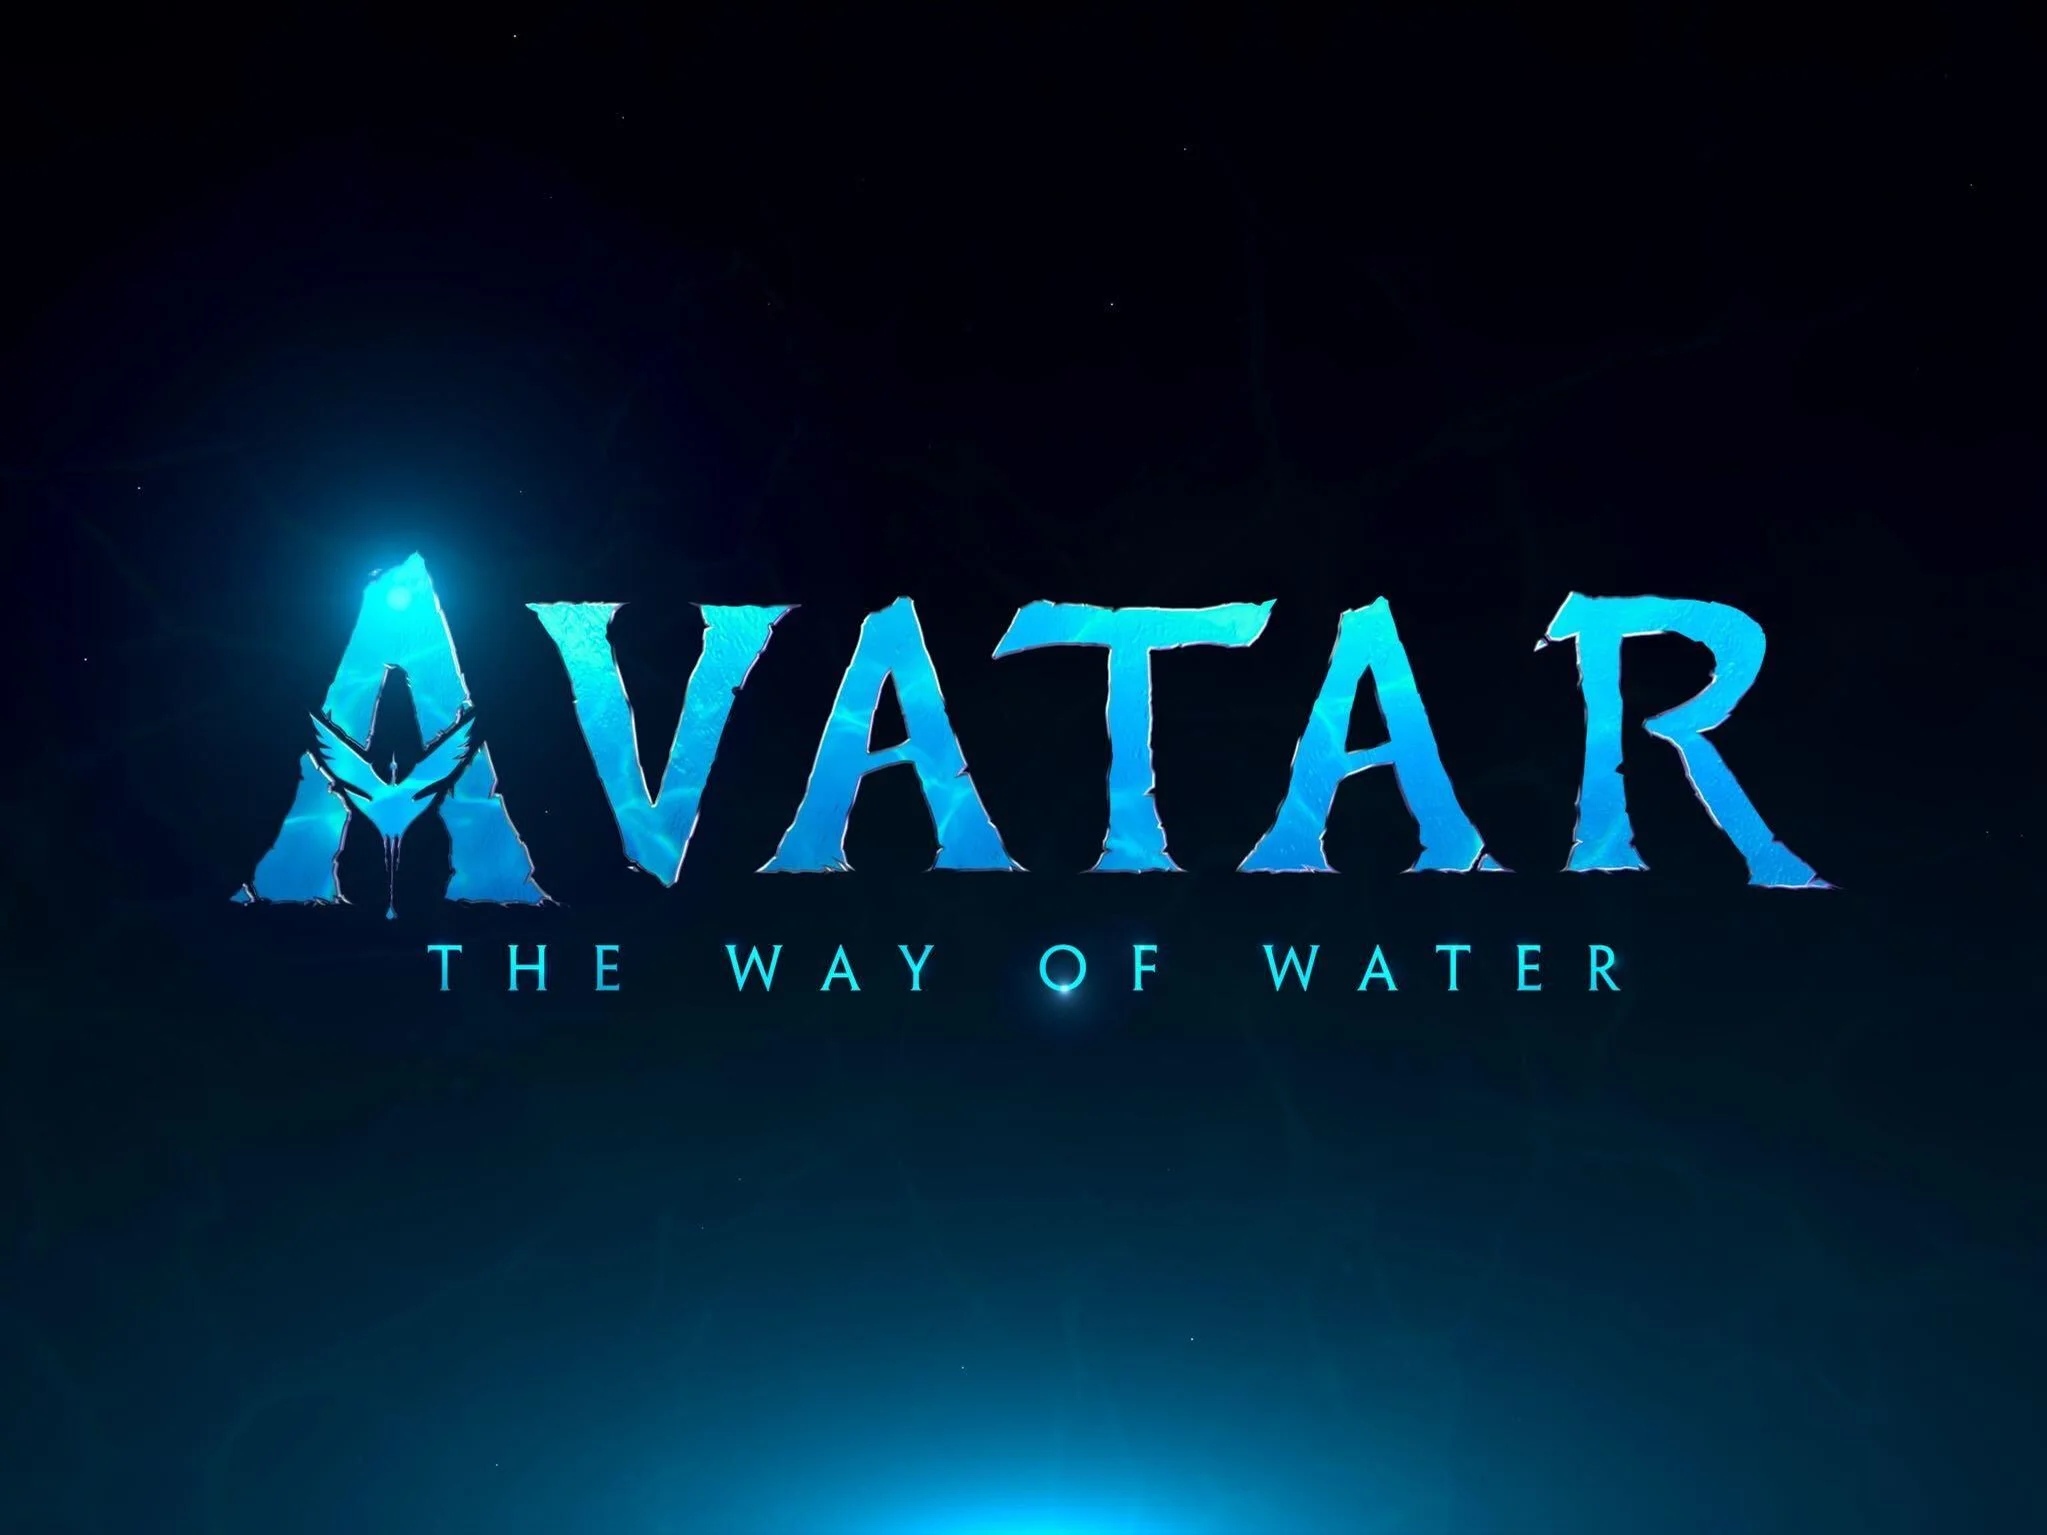 Логотип фильма «Аватар 2: Путь воды» избавился от спорного шрифта